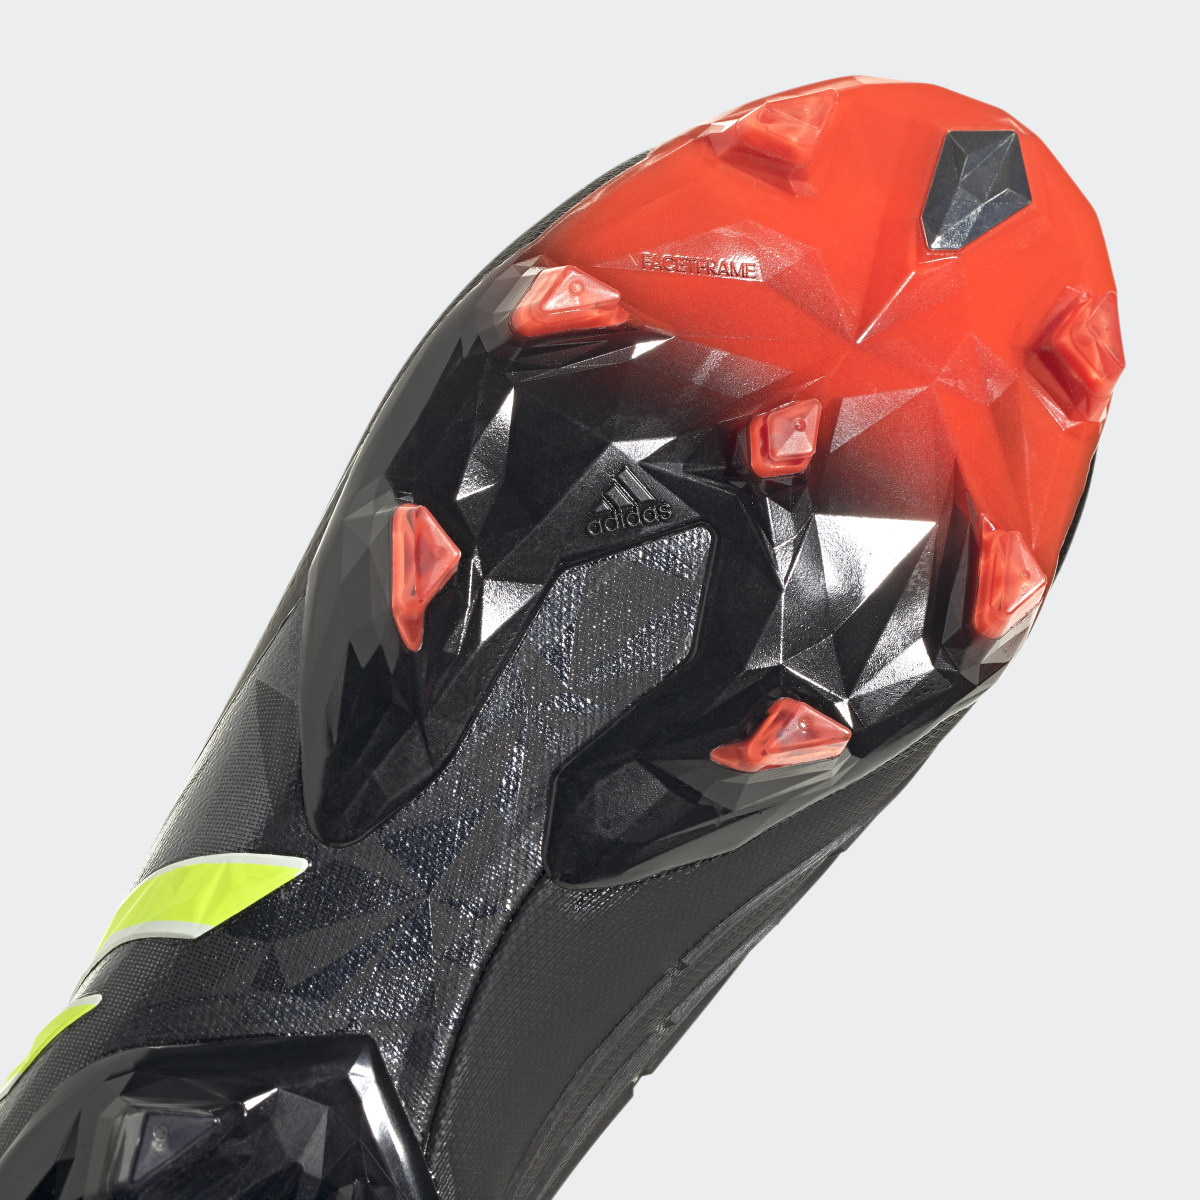 Adidas Botas de Futebol Predator Edge.1 – Piso firme. 10